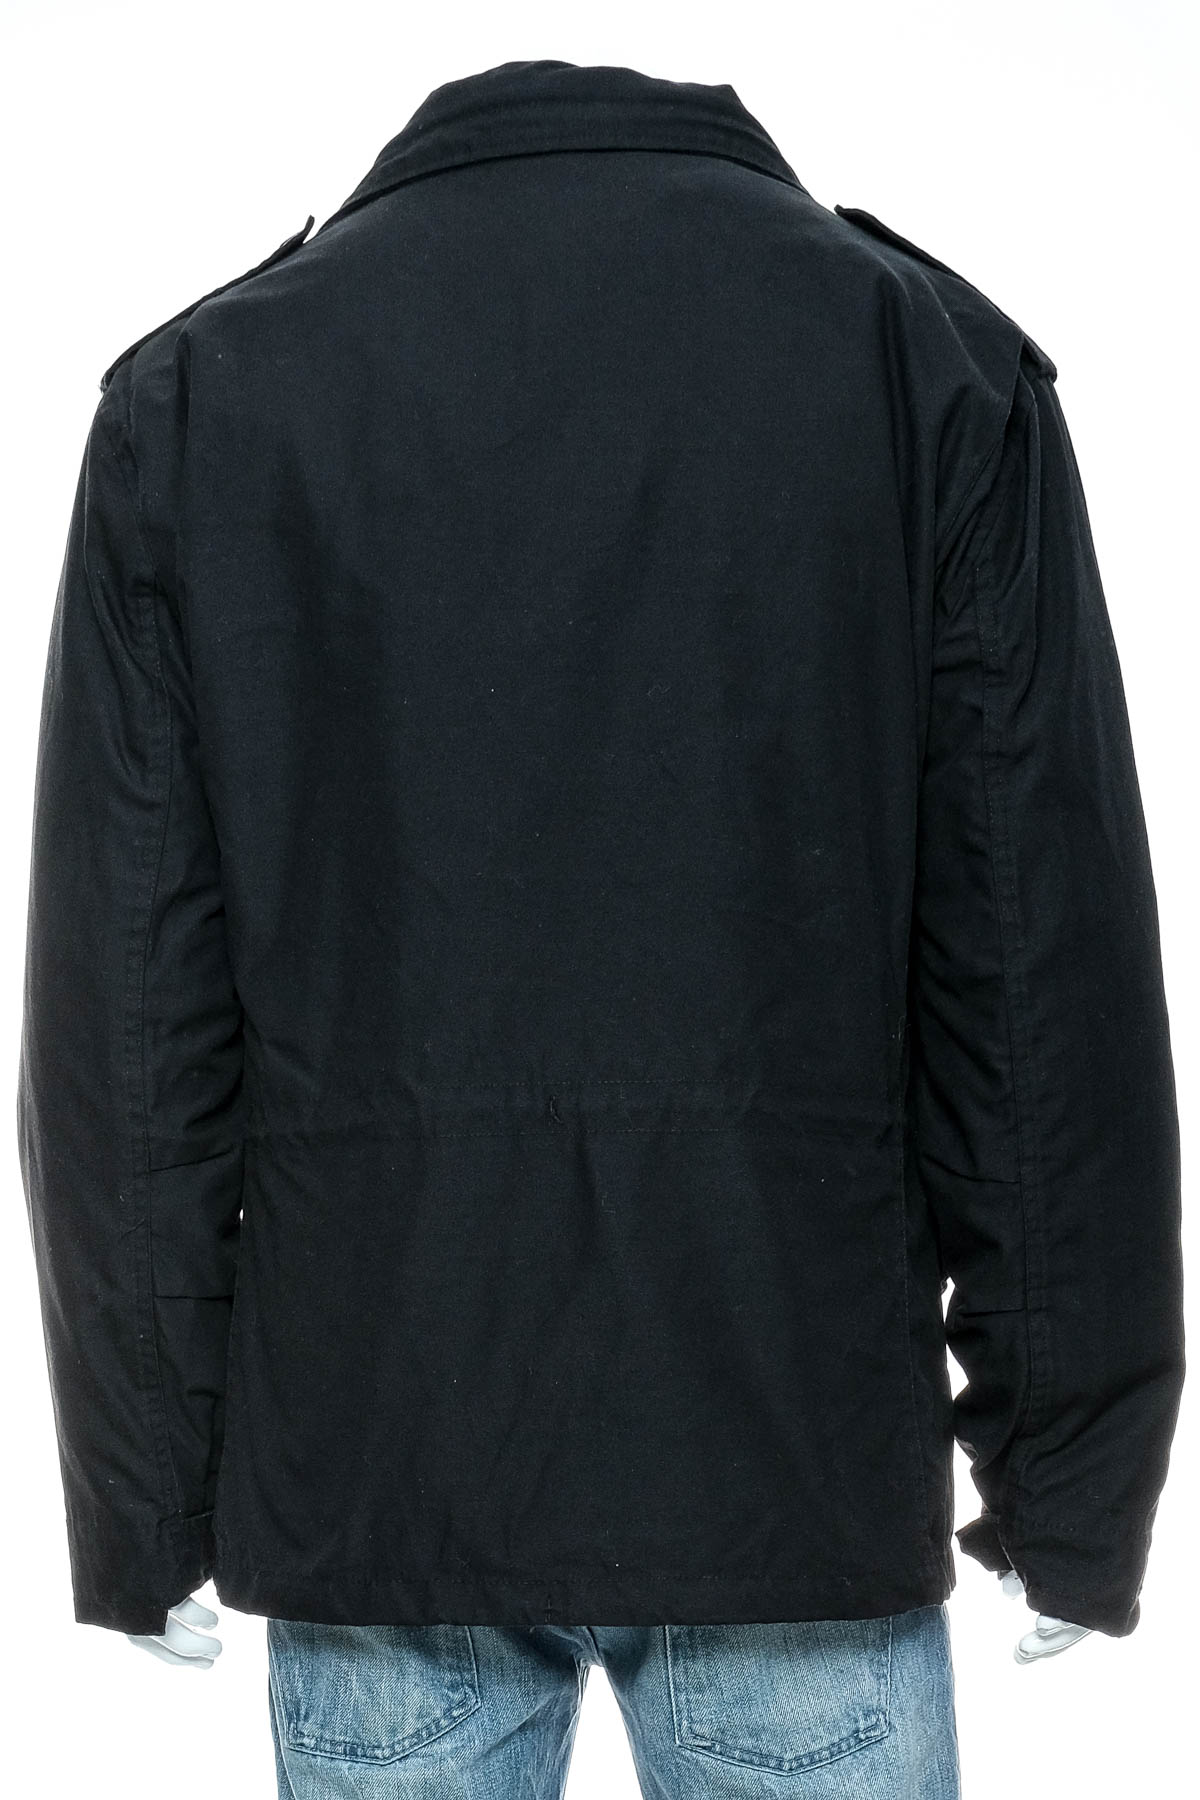 Men's jacket - Brandit - 1